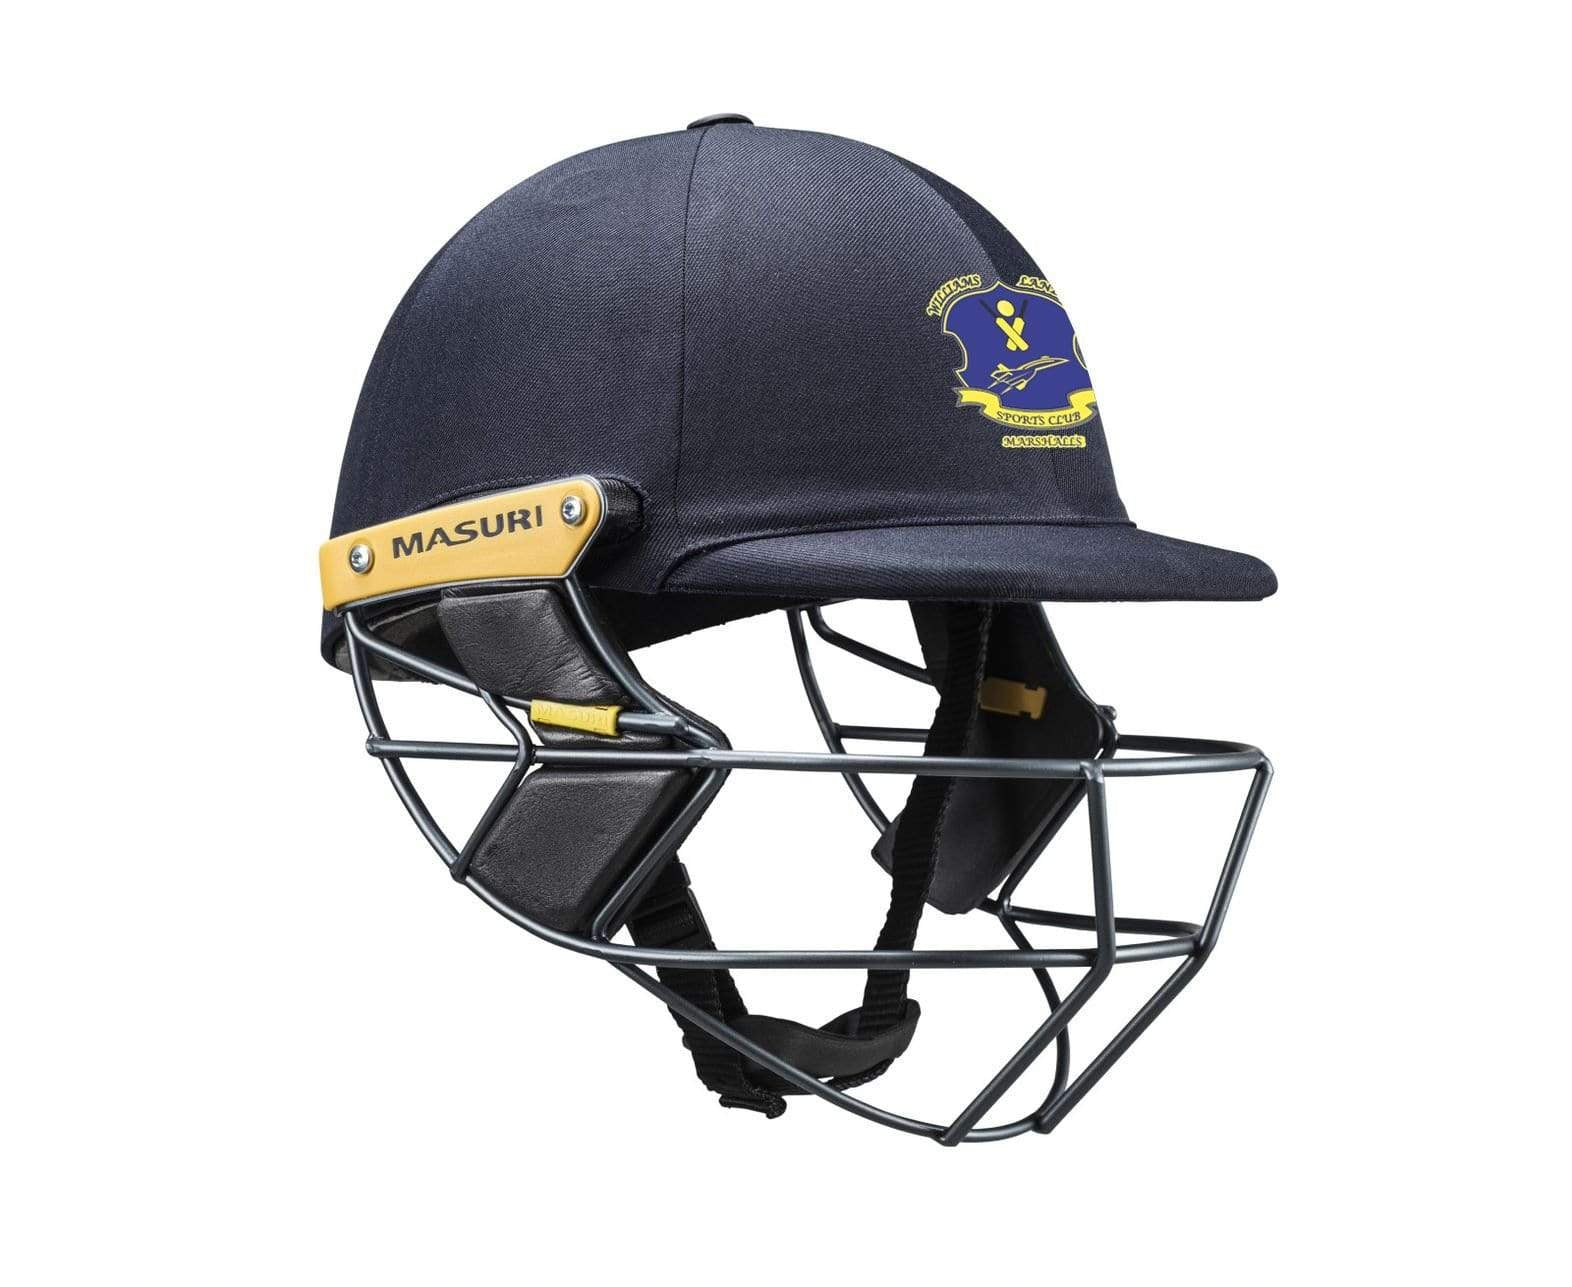 Masuri Club Helmet Williams Landing  Cricket Club Helmet